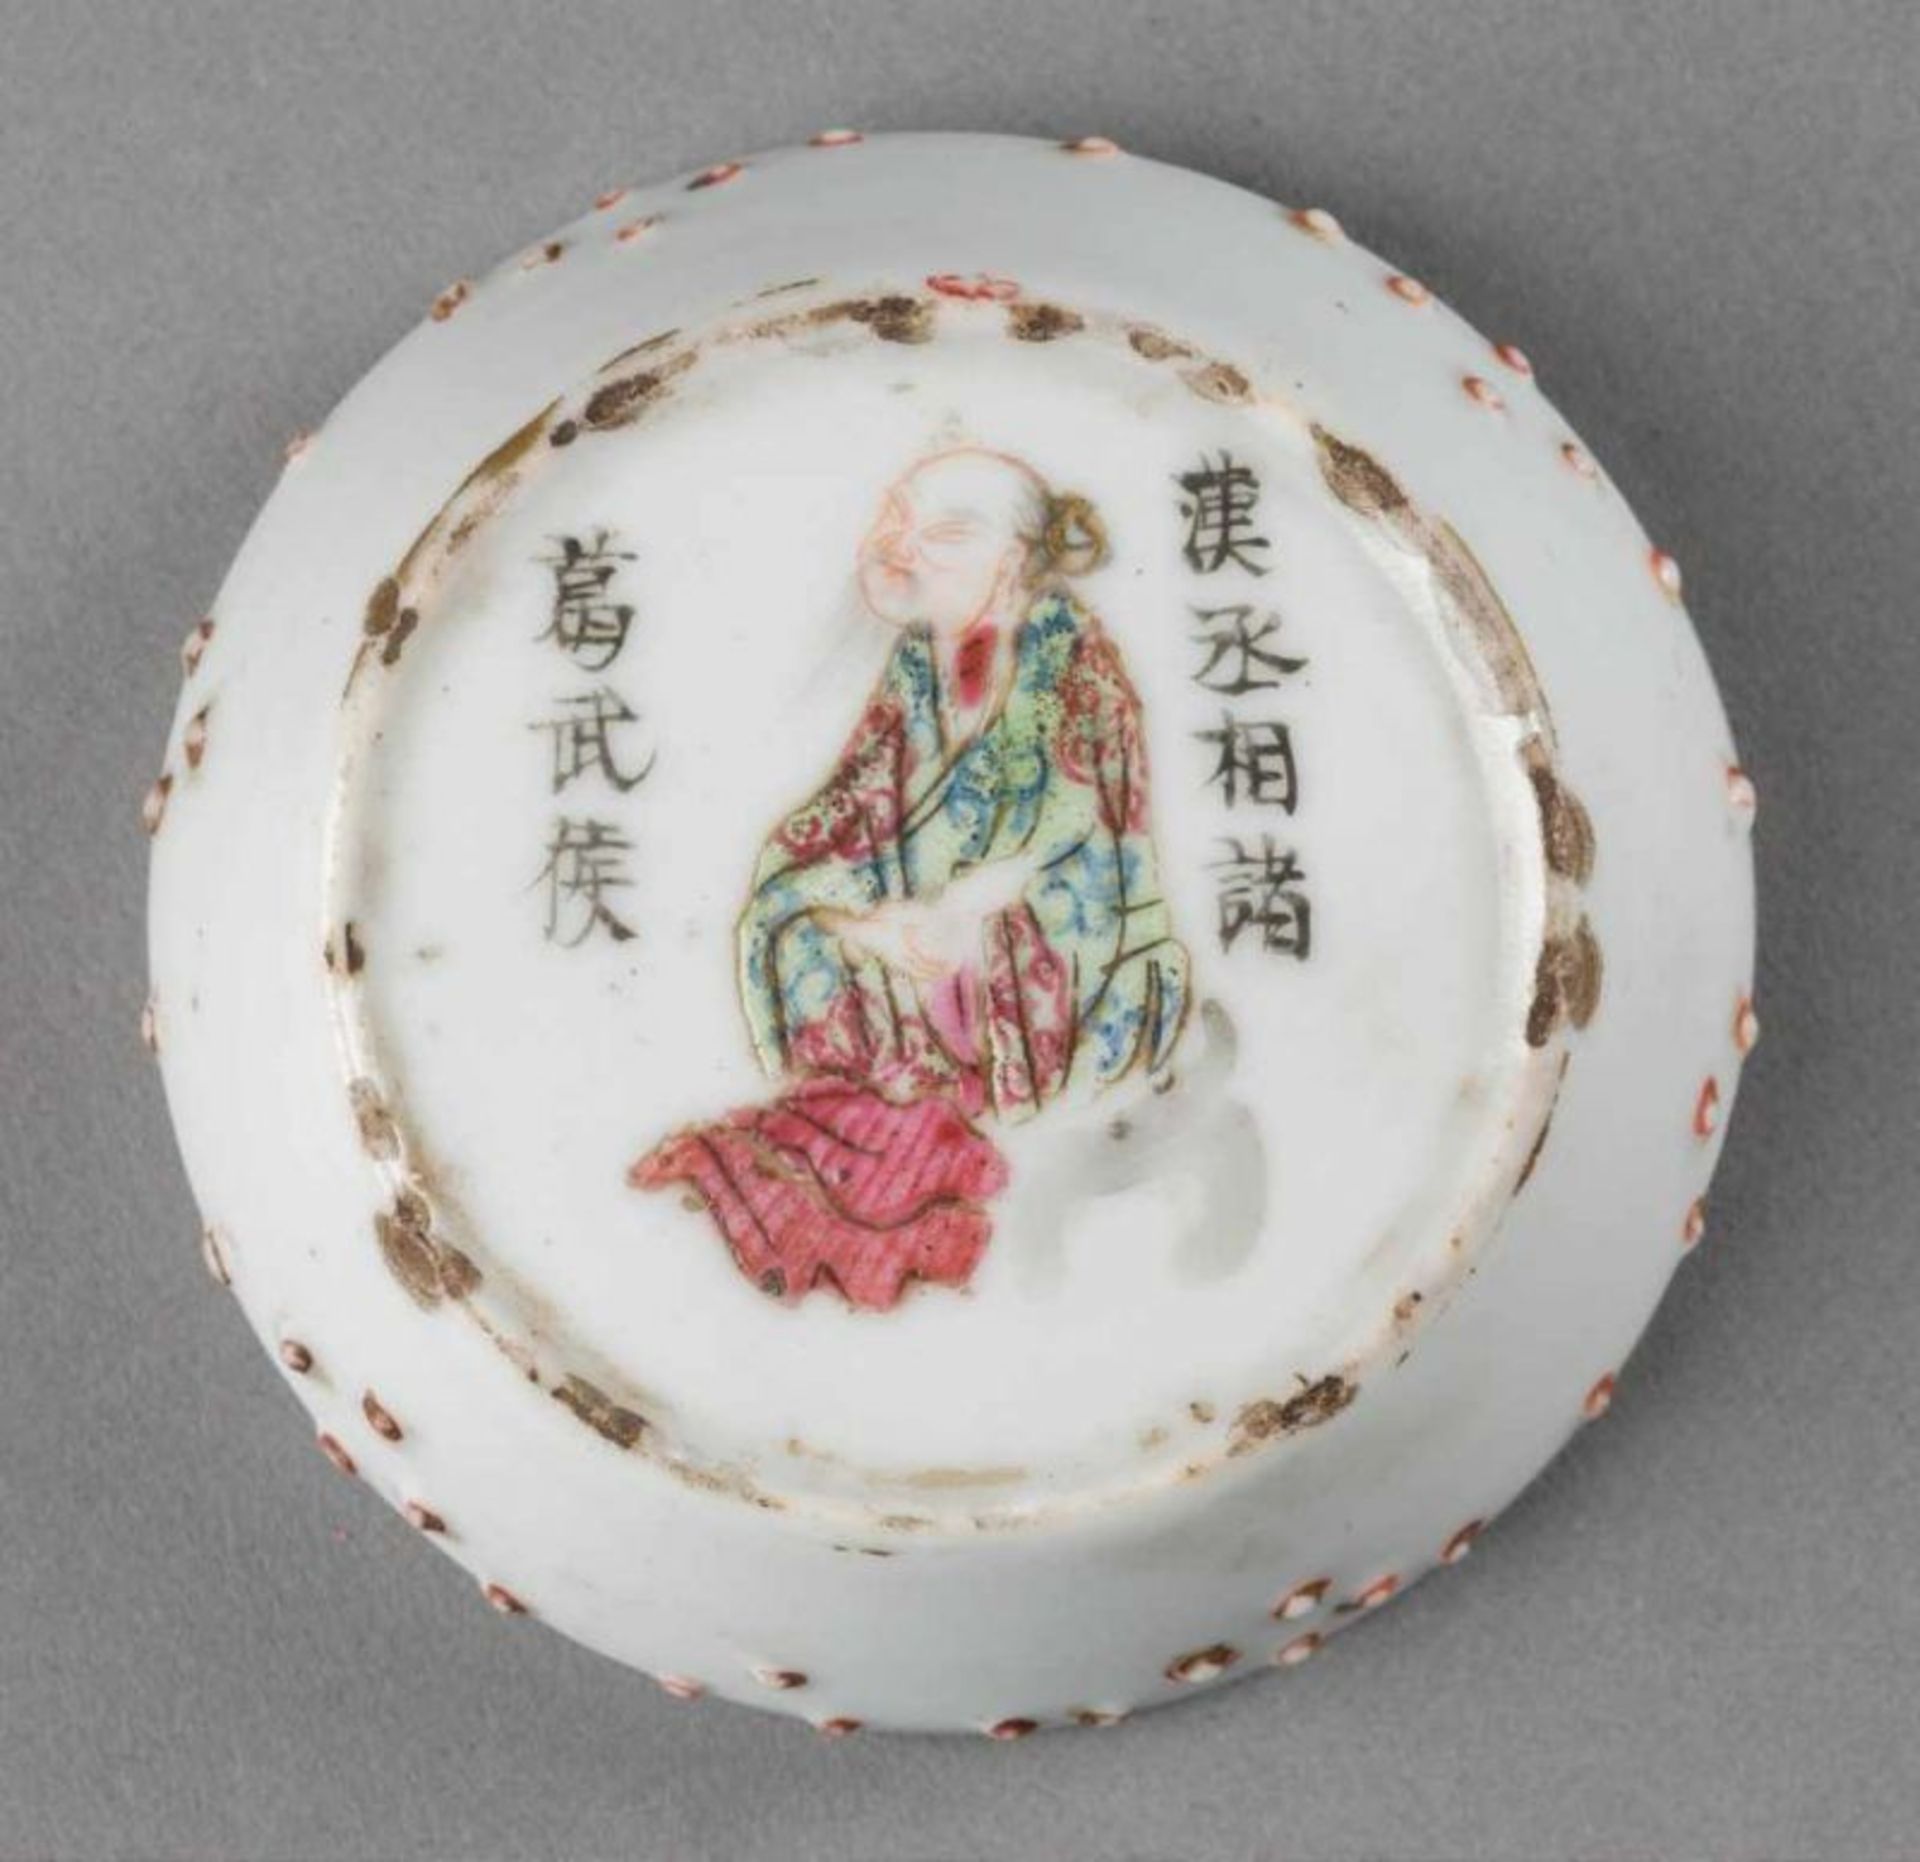 KLEINE DECKELDOSE UND KUMME China, um 1900 Porzellan, polychromer Aufglasurdekor. H. 4,5 cm-7 cm. - Image 3 of 3